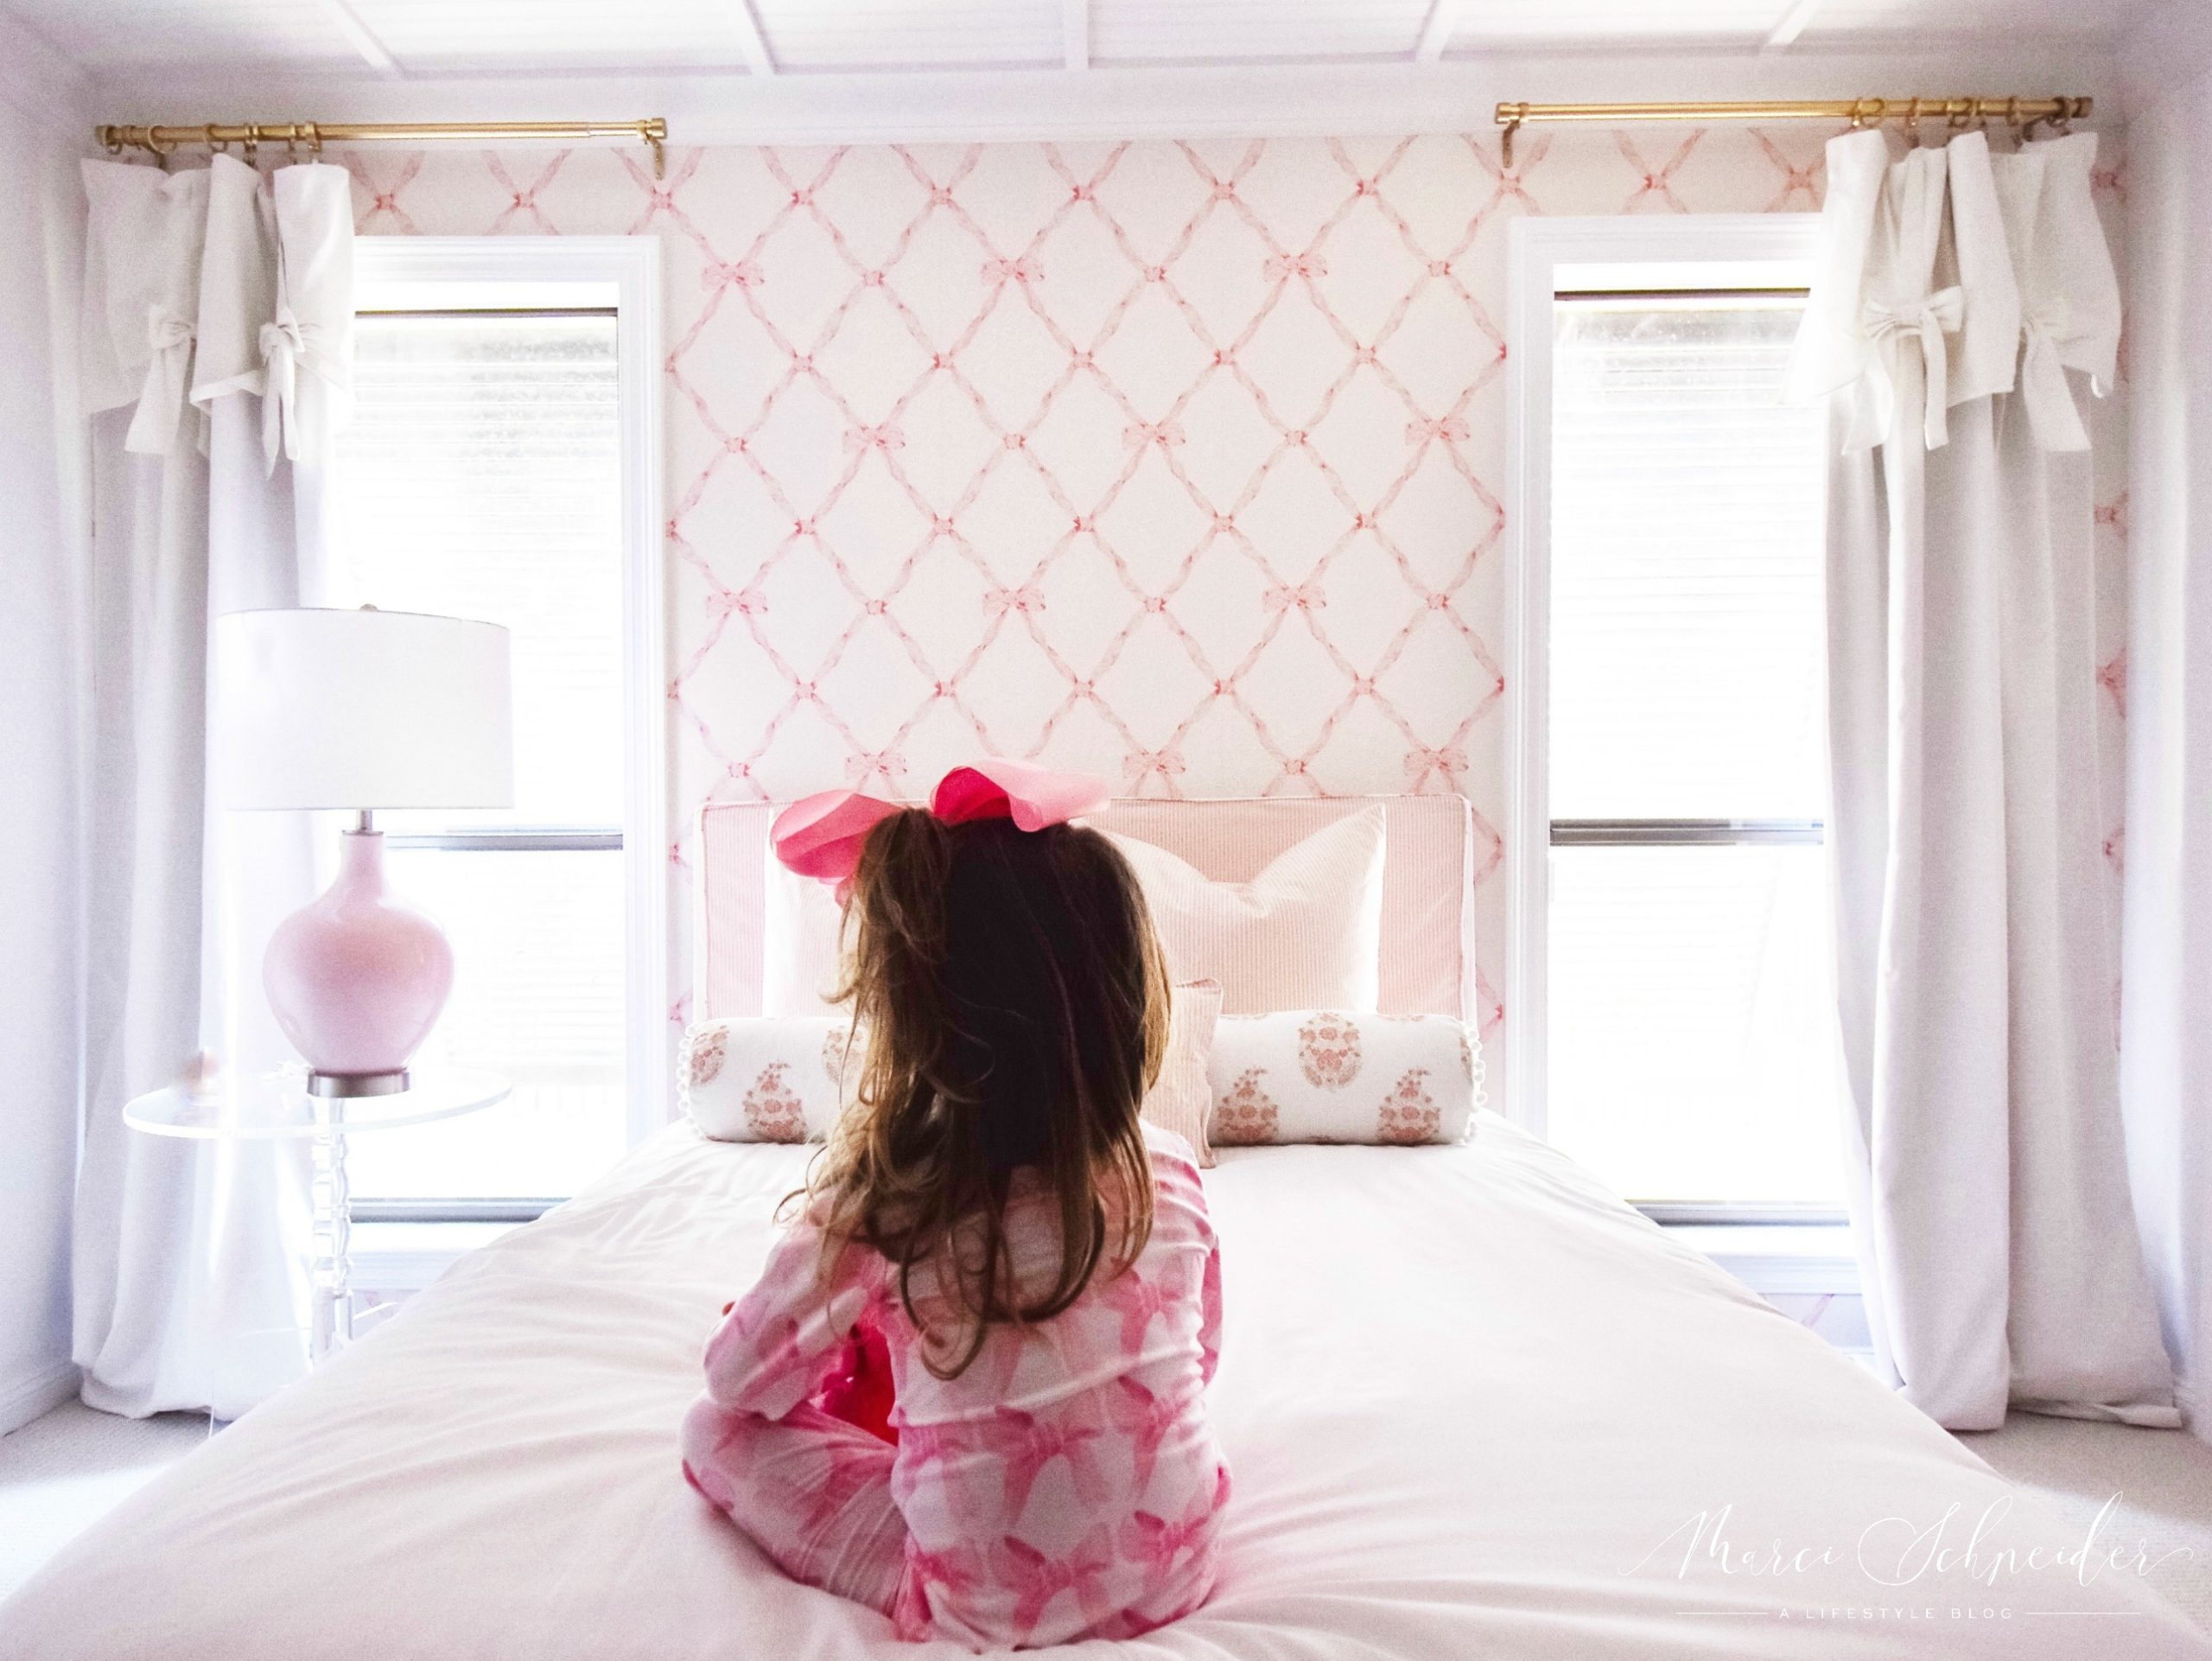 Girls Room Design- Wallpaper, Pillows, Headboard